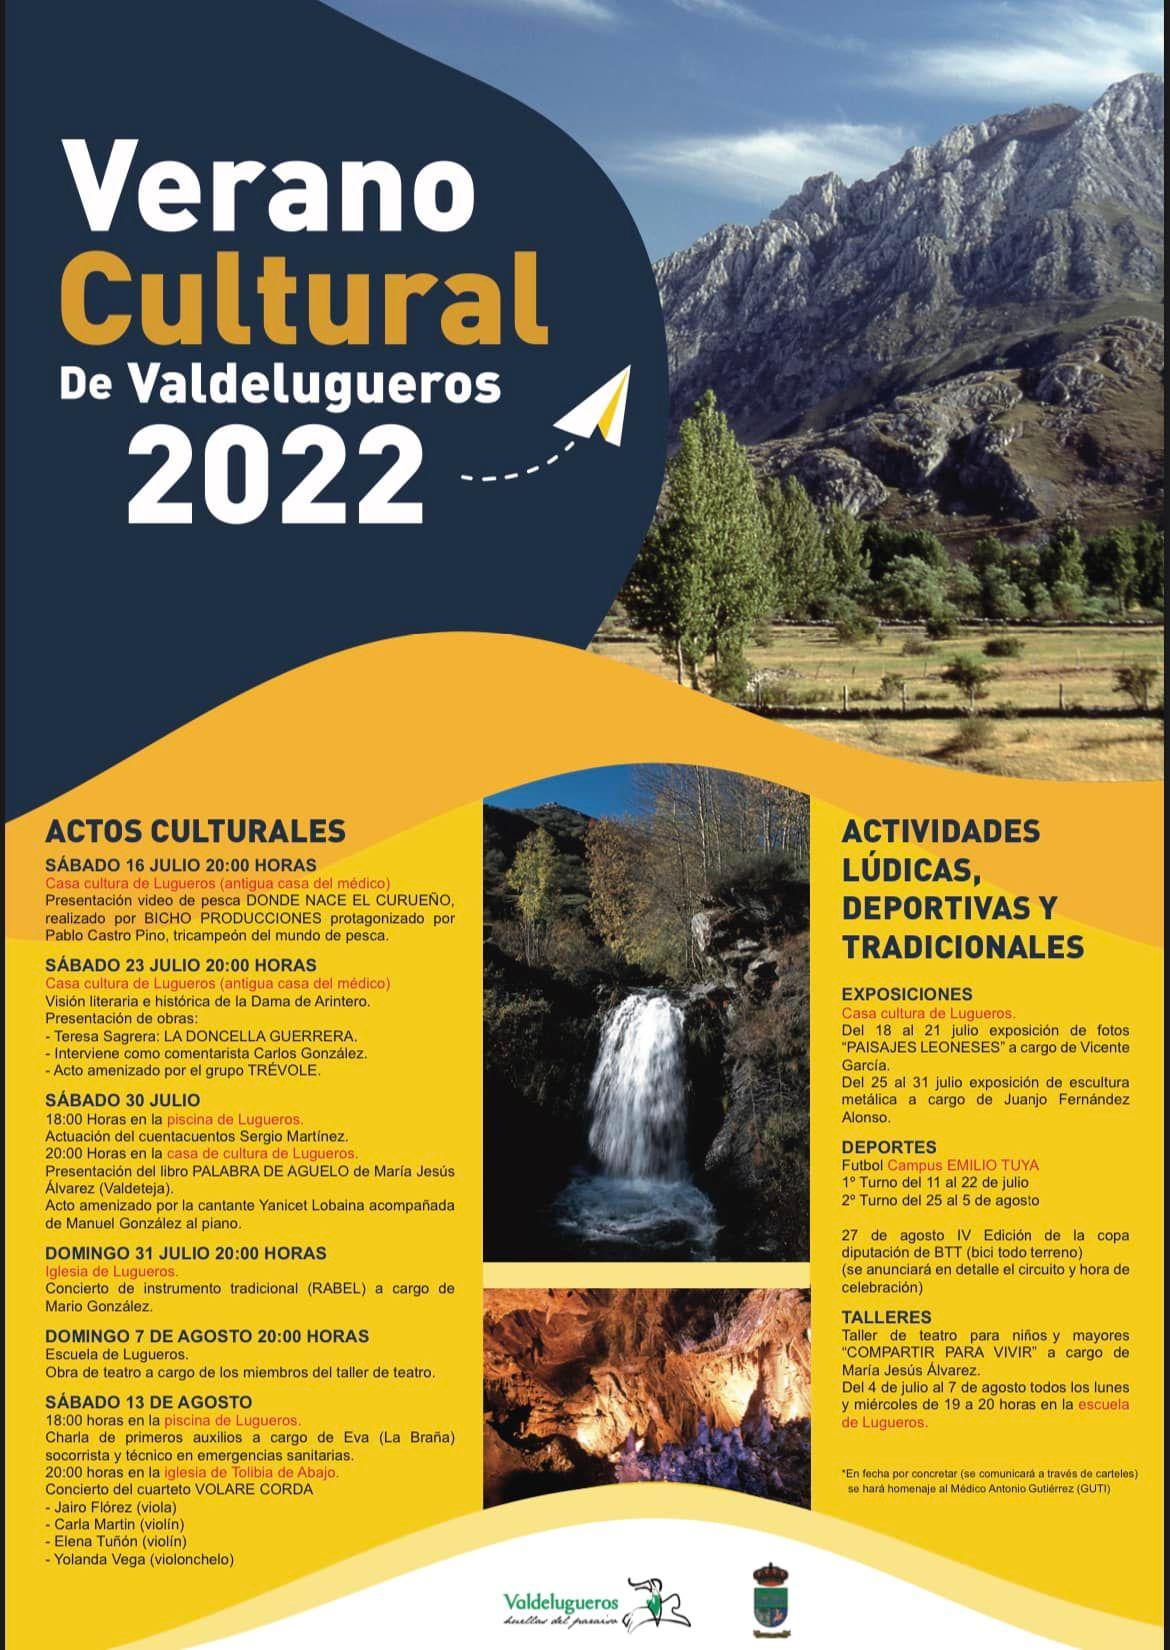 Verano cultural de Valdelugueros 2022.0